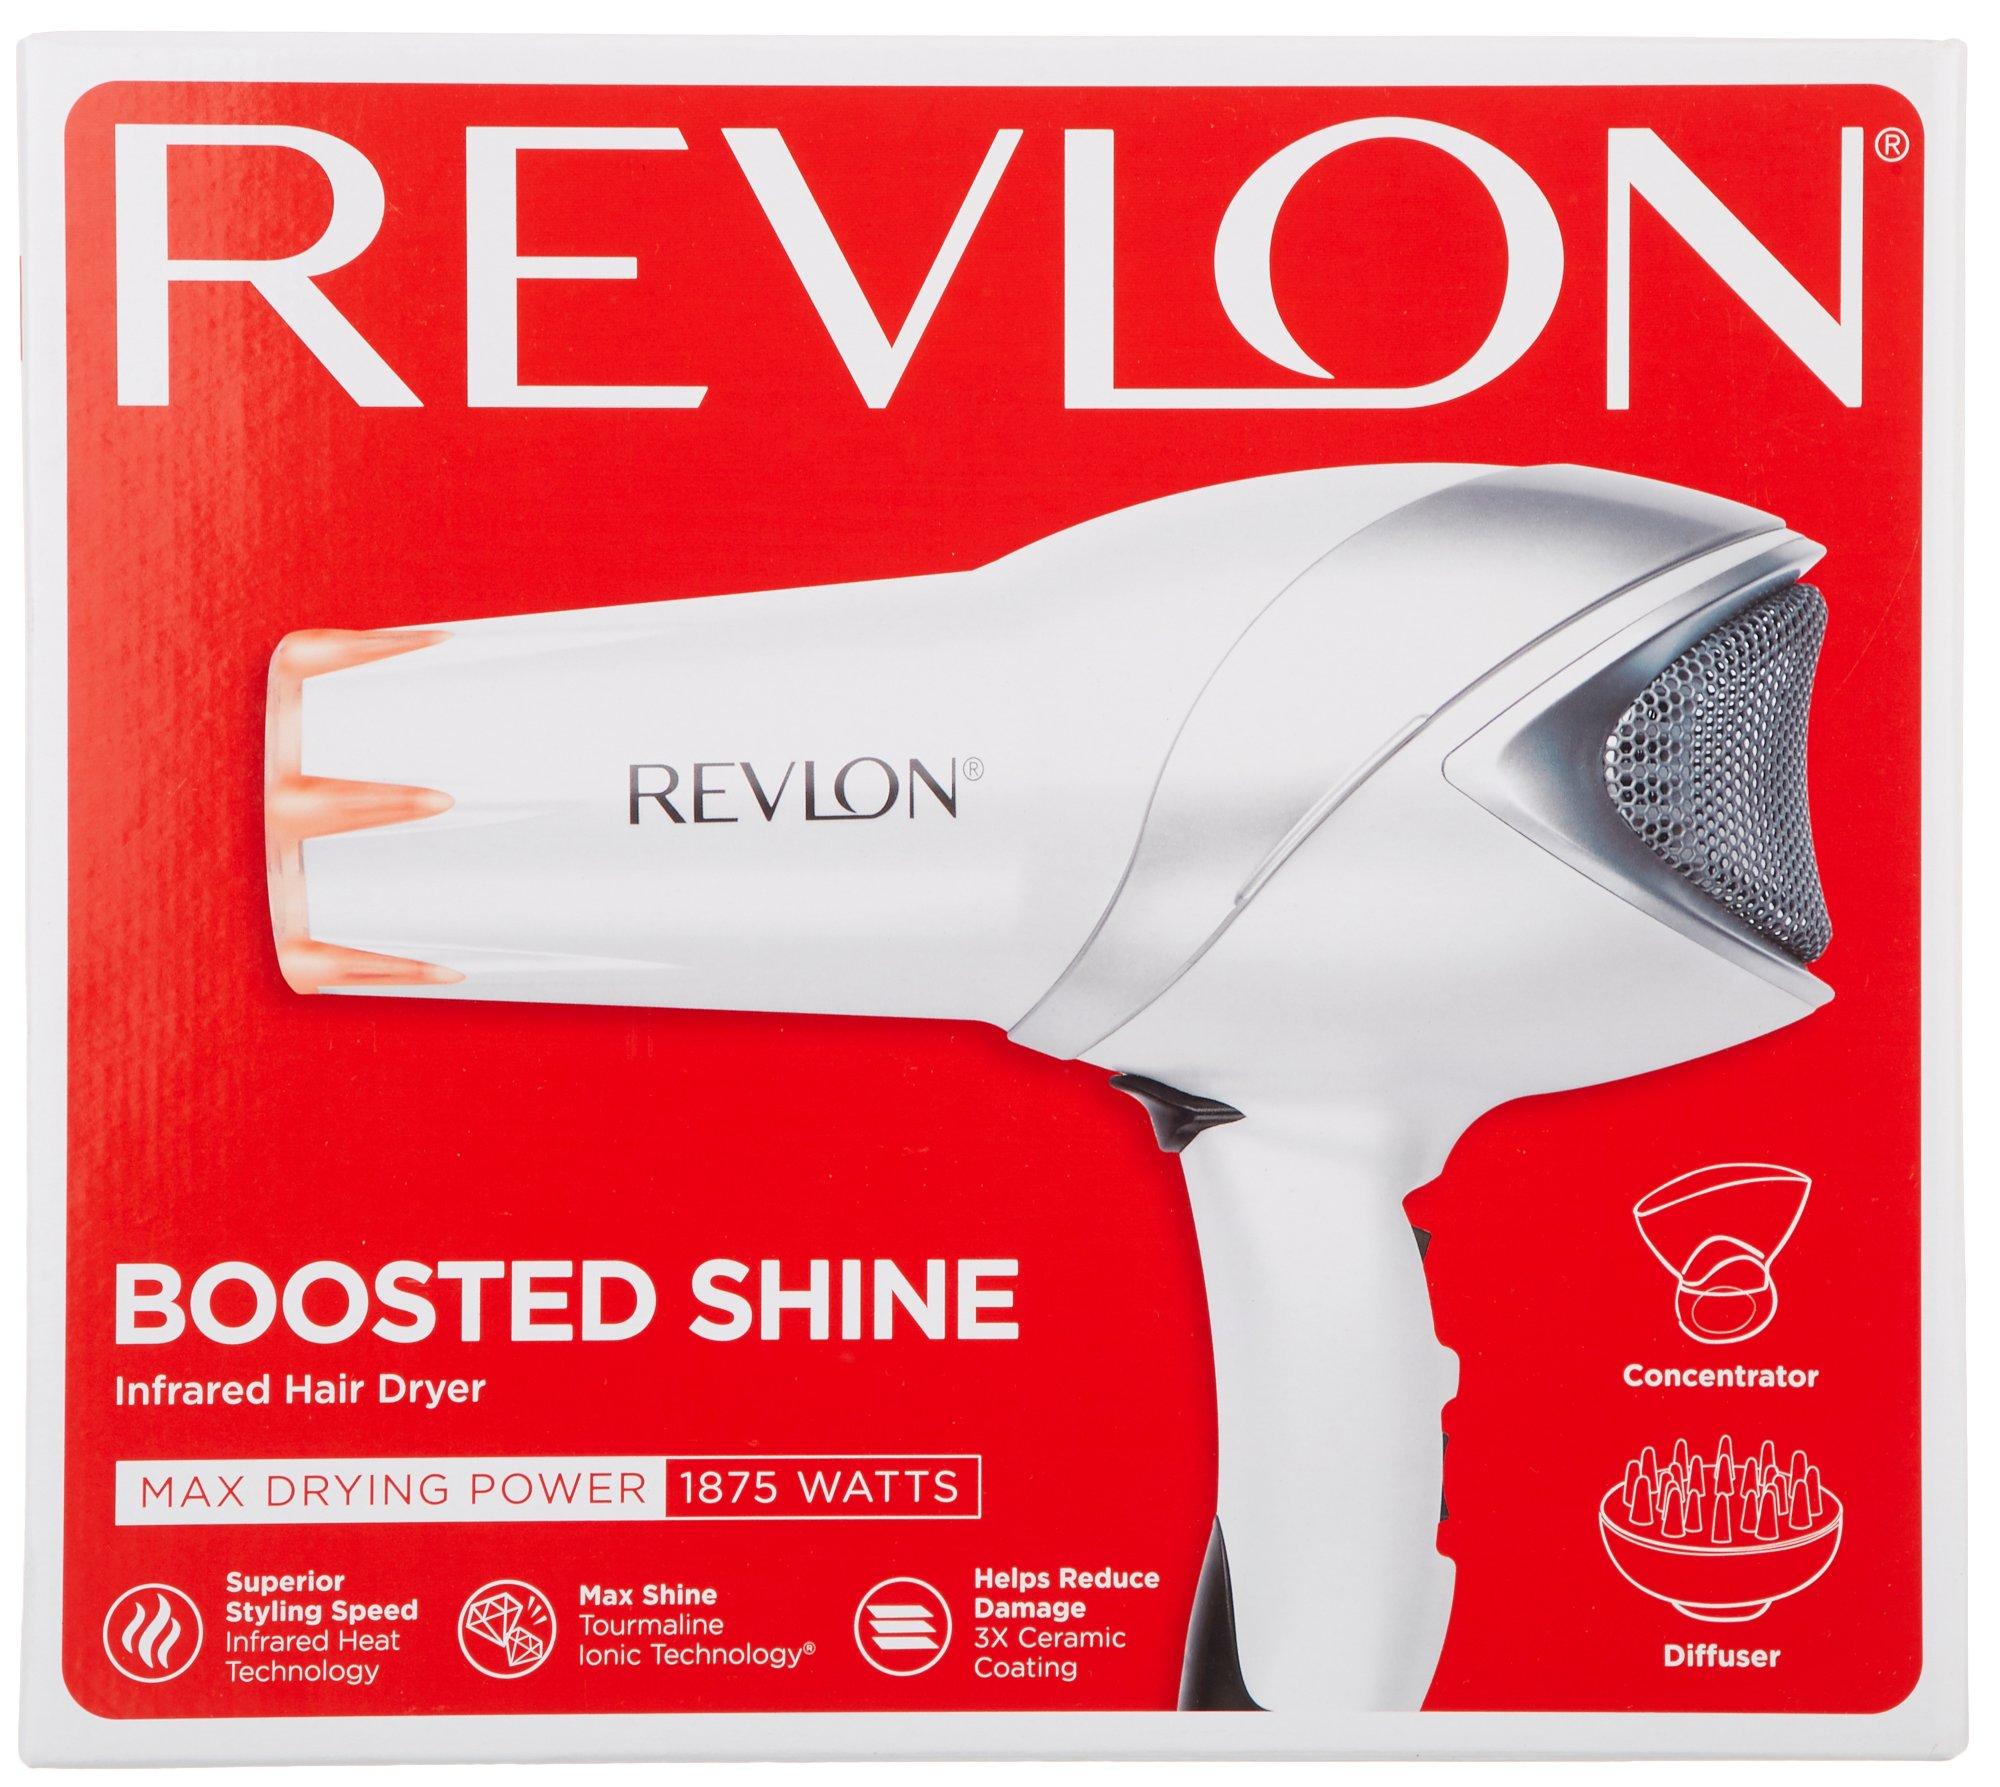 Revlon Boosted Shine 1875 Watt Infrared Hair Dryer